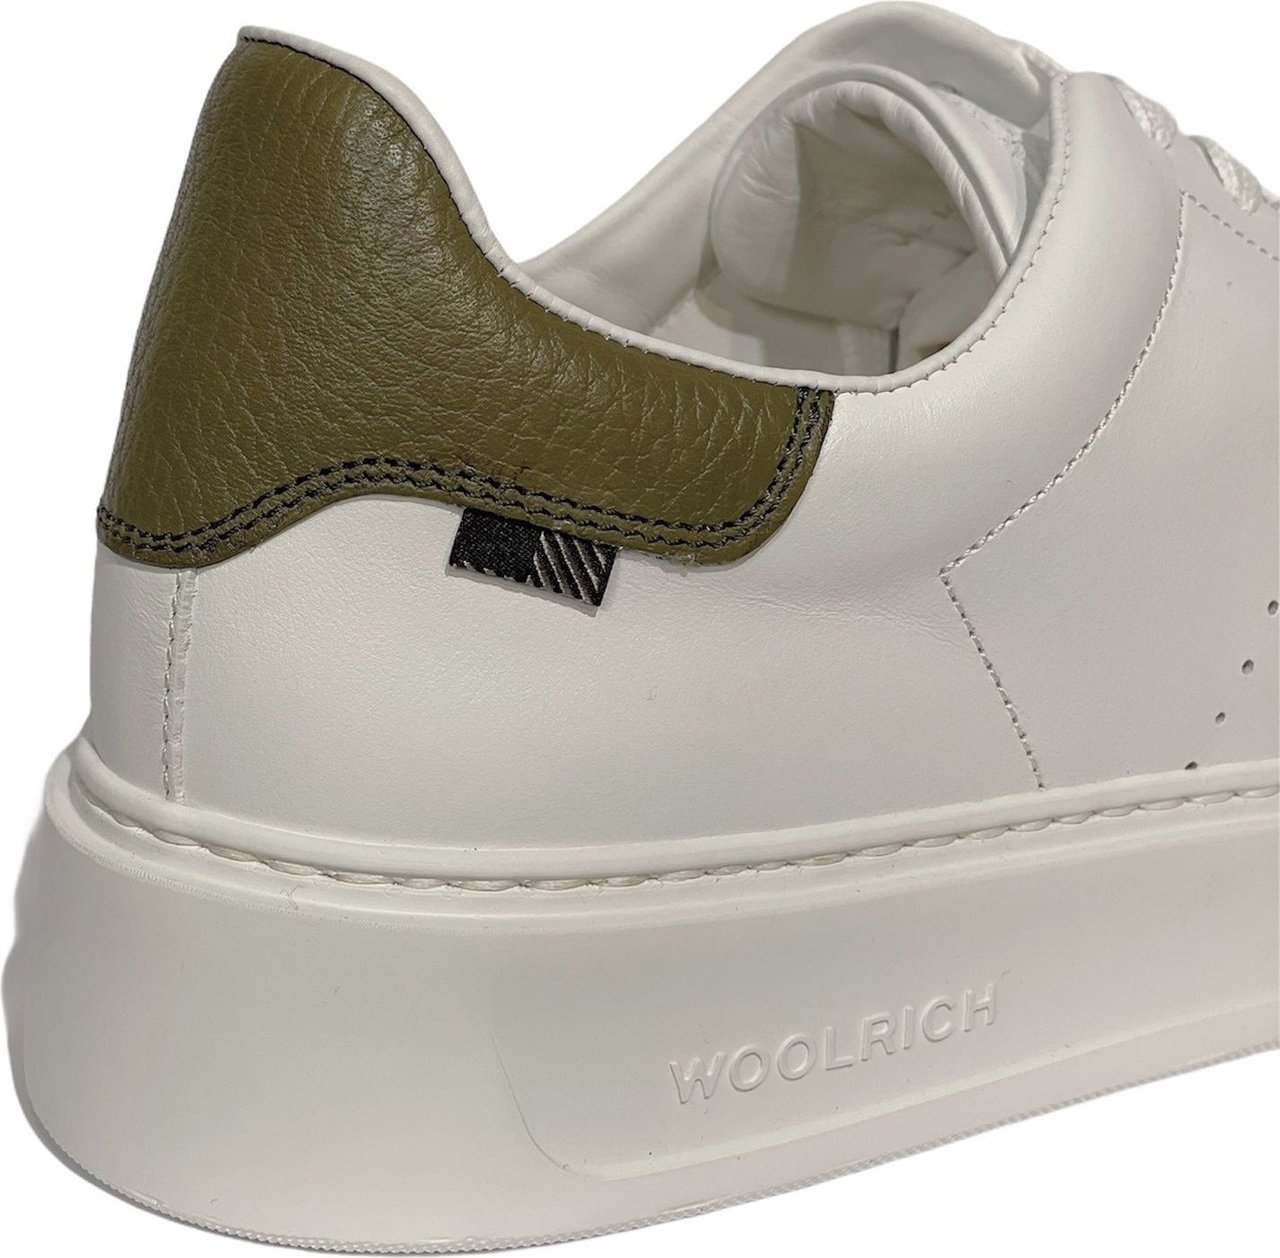 Woolrich Sneaker wit/groen Wit